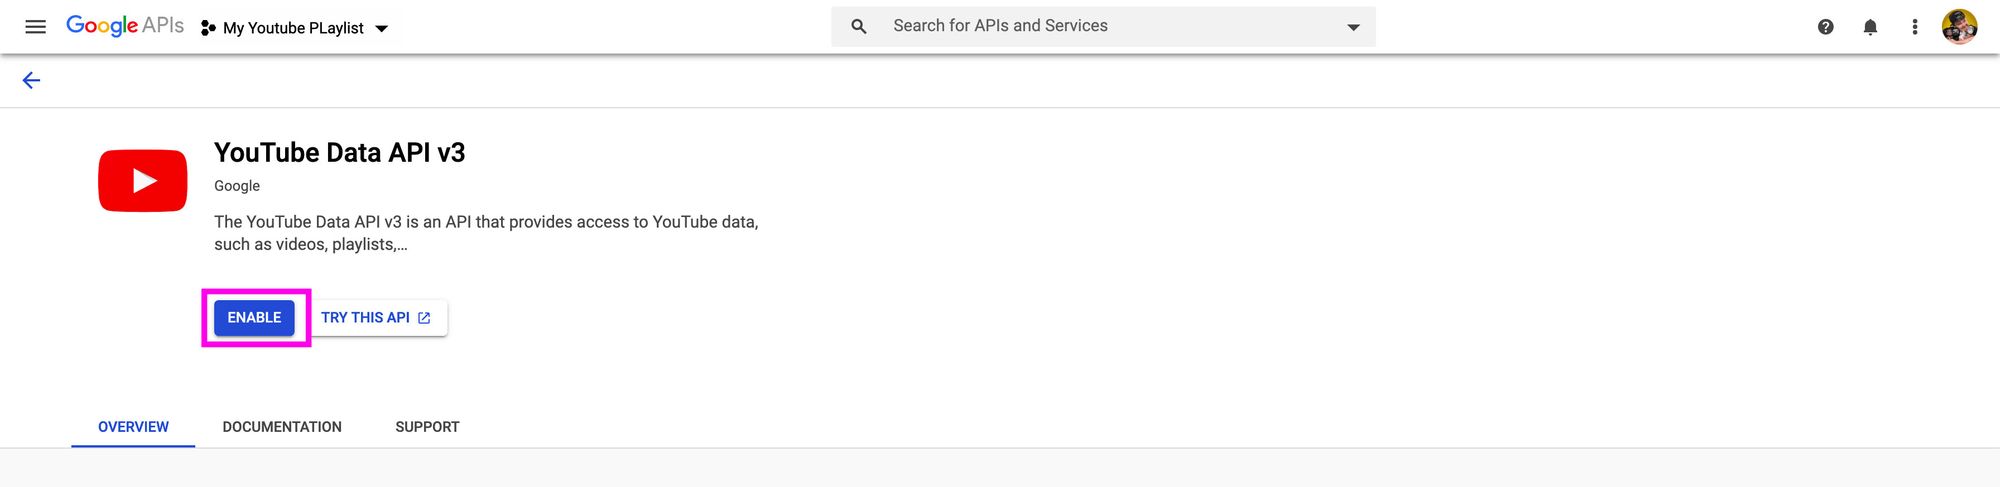 google-api-enable-youtube-data-api